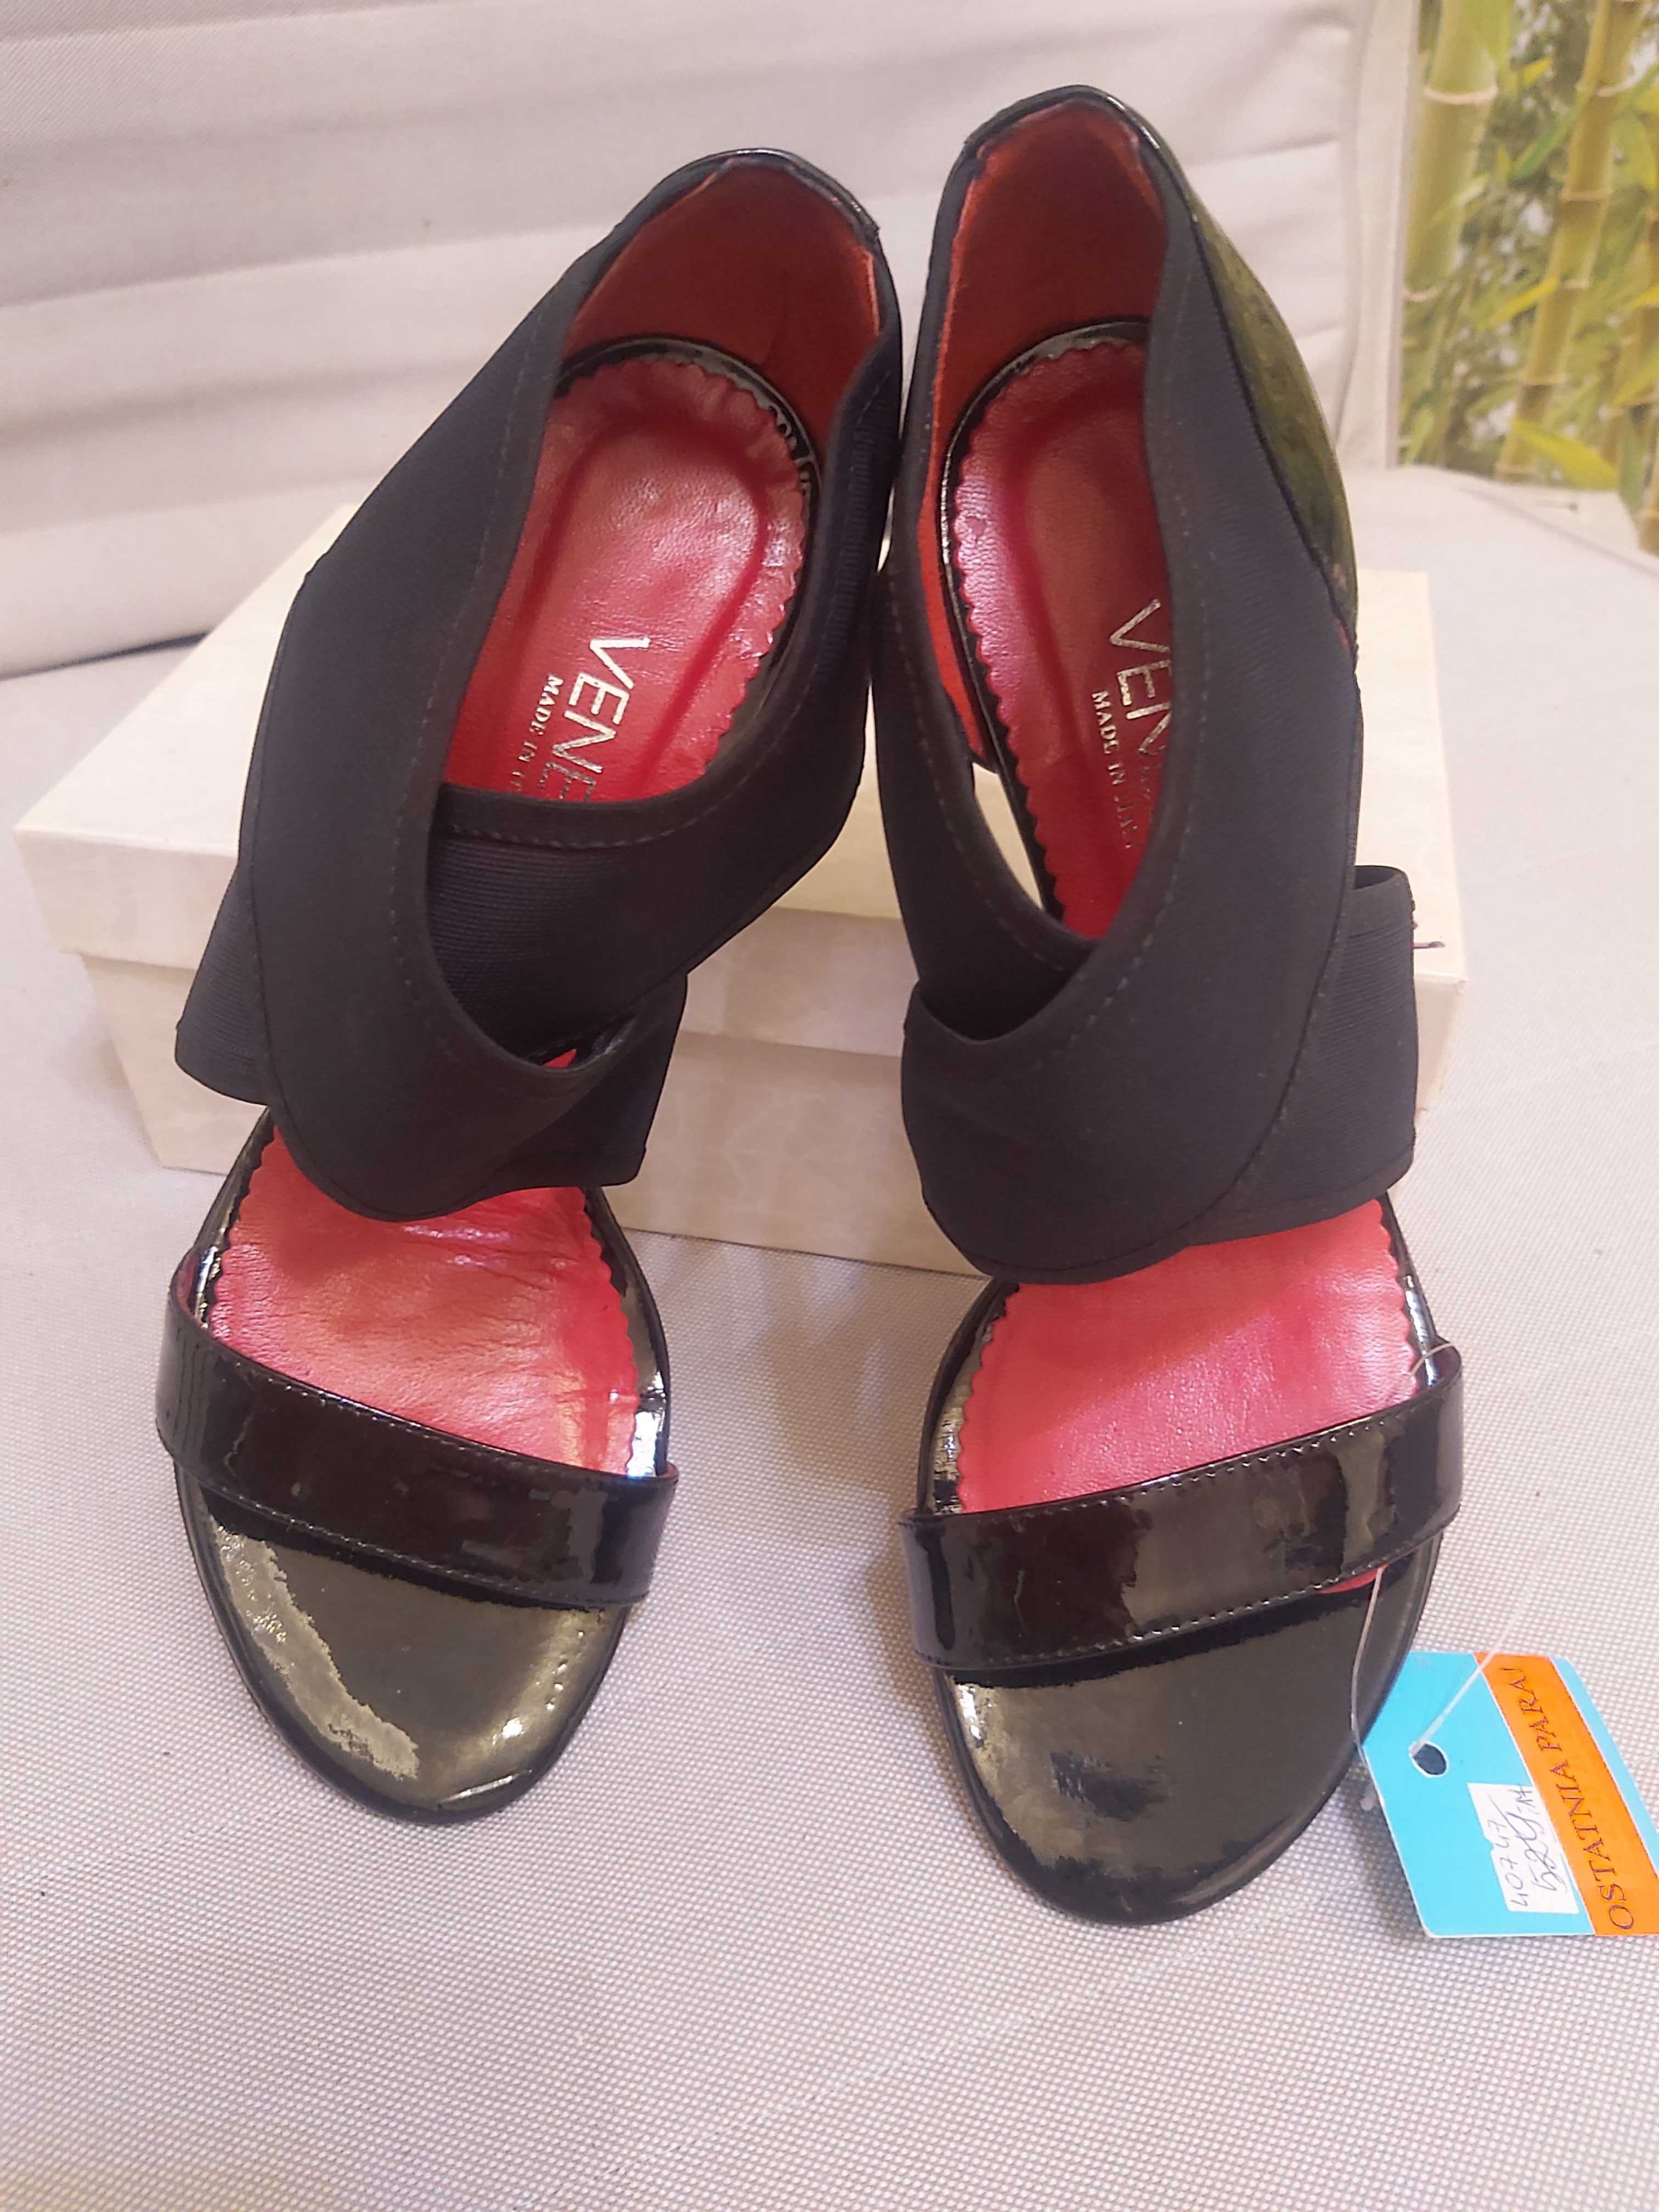 VENEZIA buty skóra damskie długość 27 cm cena katalogowa 529 zł